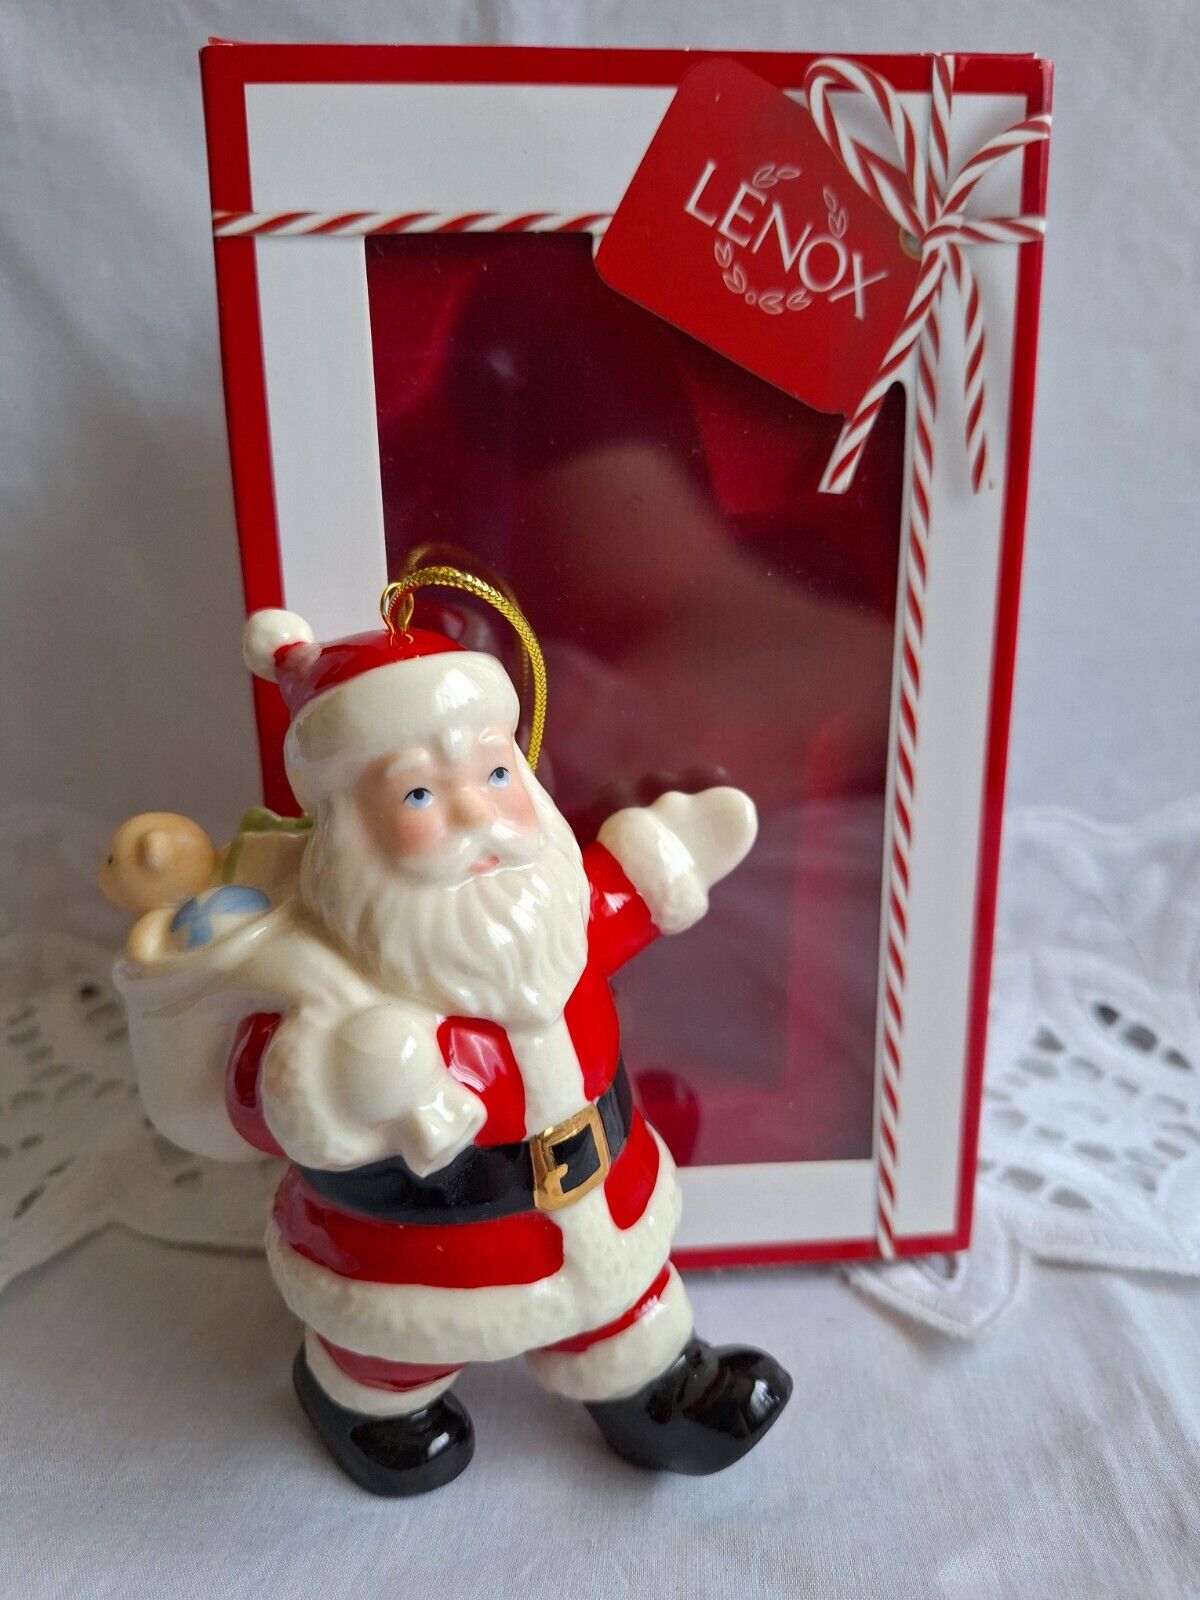 LENOX Special Delivery Santa Claus Ornament